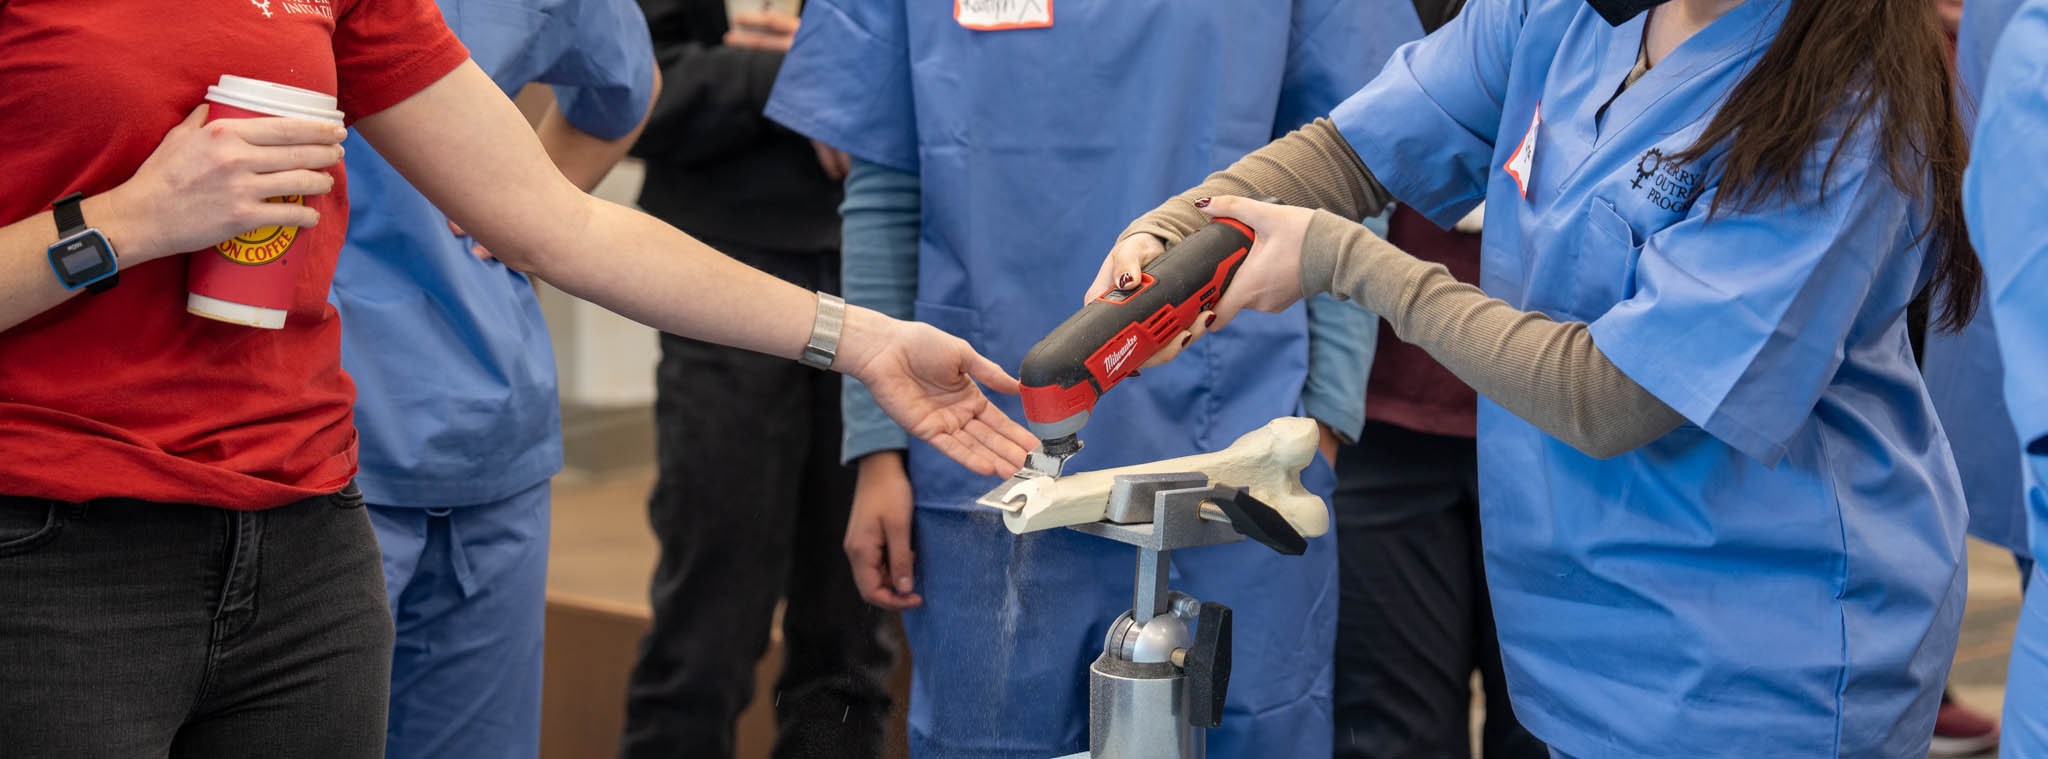 Schüler interagieren mit einem Werkzeug und einem prothetischen Knochen